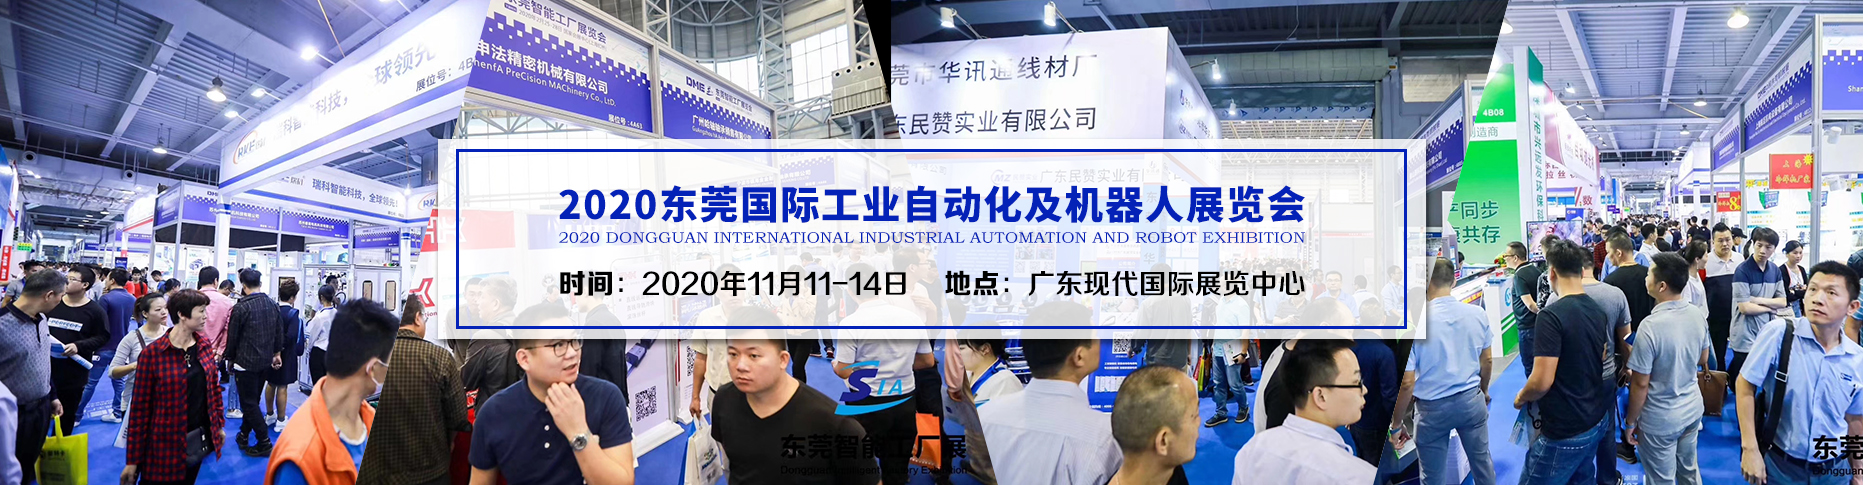 2020东莞国际工业自动化及机器人展览会SIA